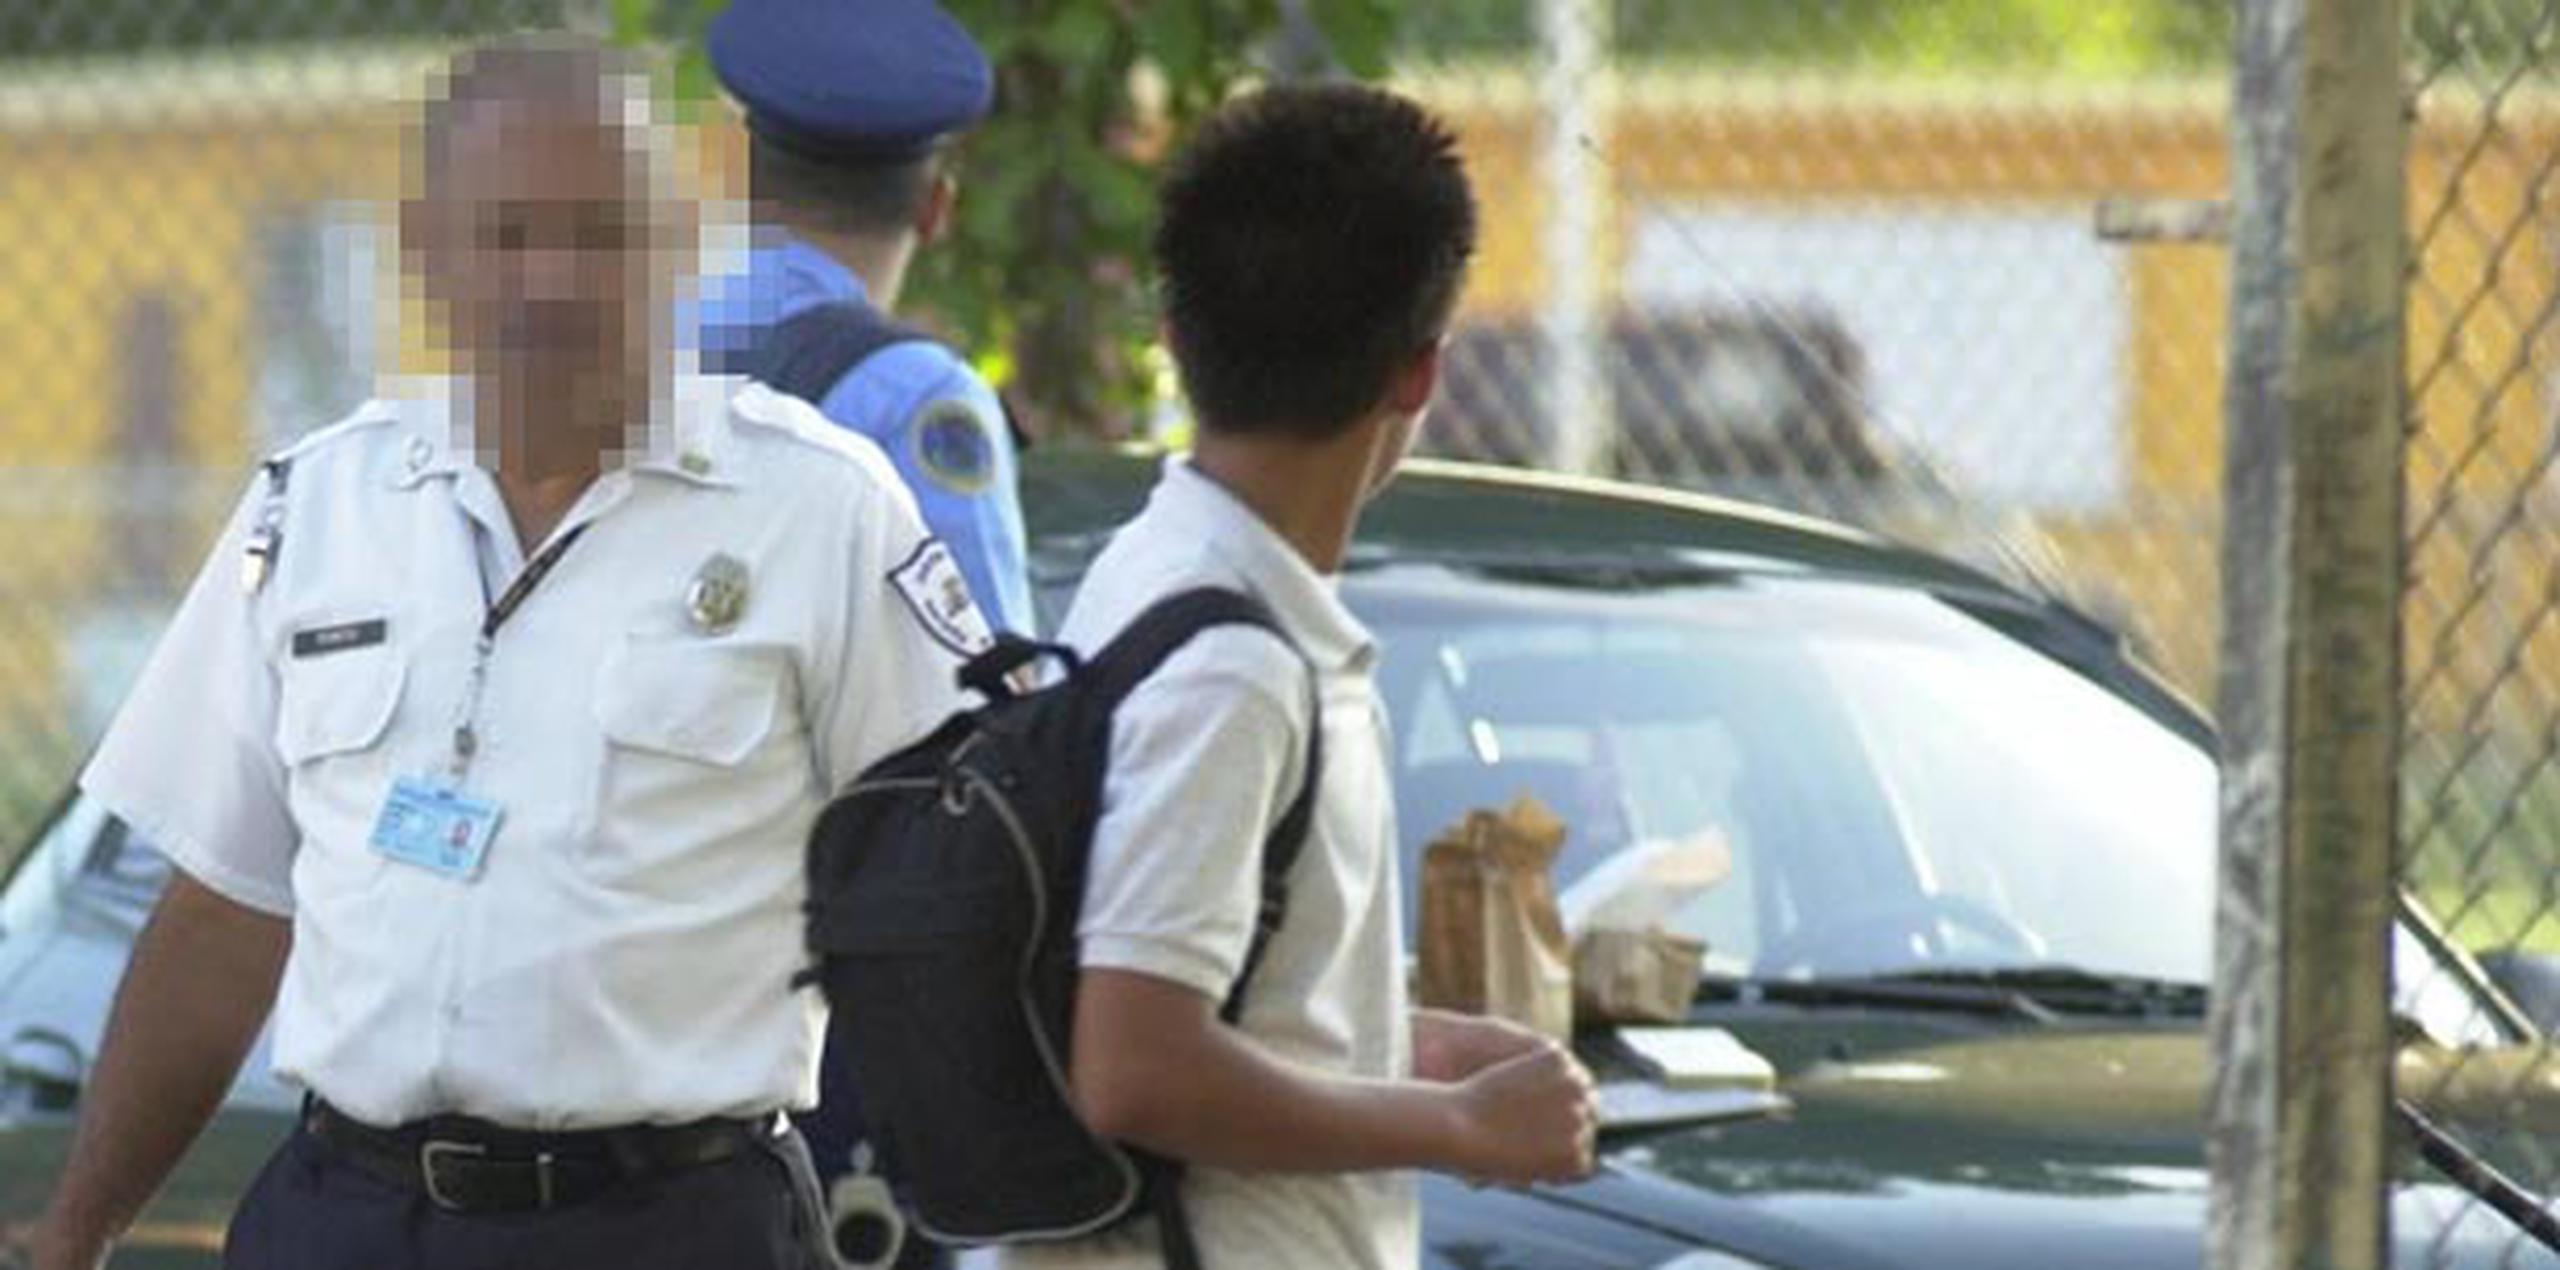 El Departamento de Educación ubicó guardias escolares solo en las escuelas de mayor incidencia criminal.   (Archivo)